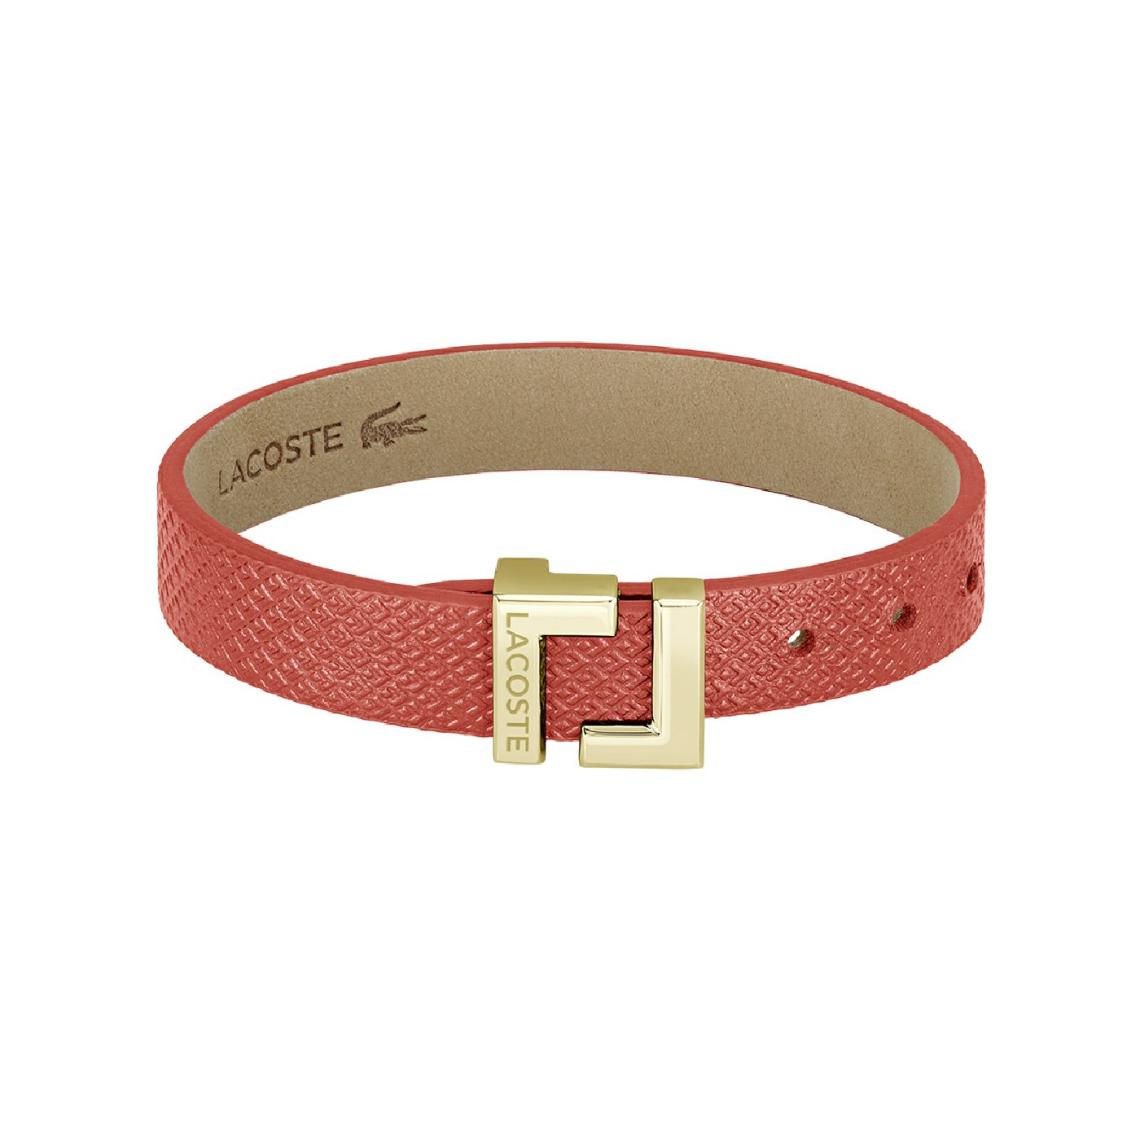 Bracelet Femme Lacoste Lura - 2040217 CUIR Doré